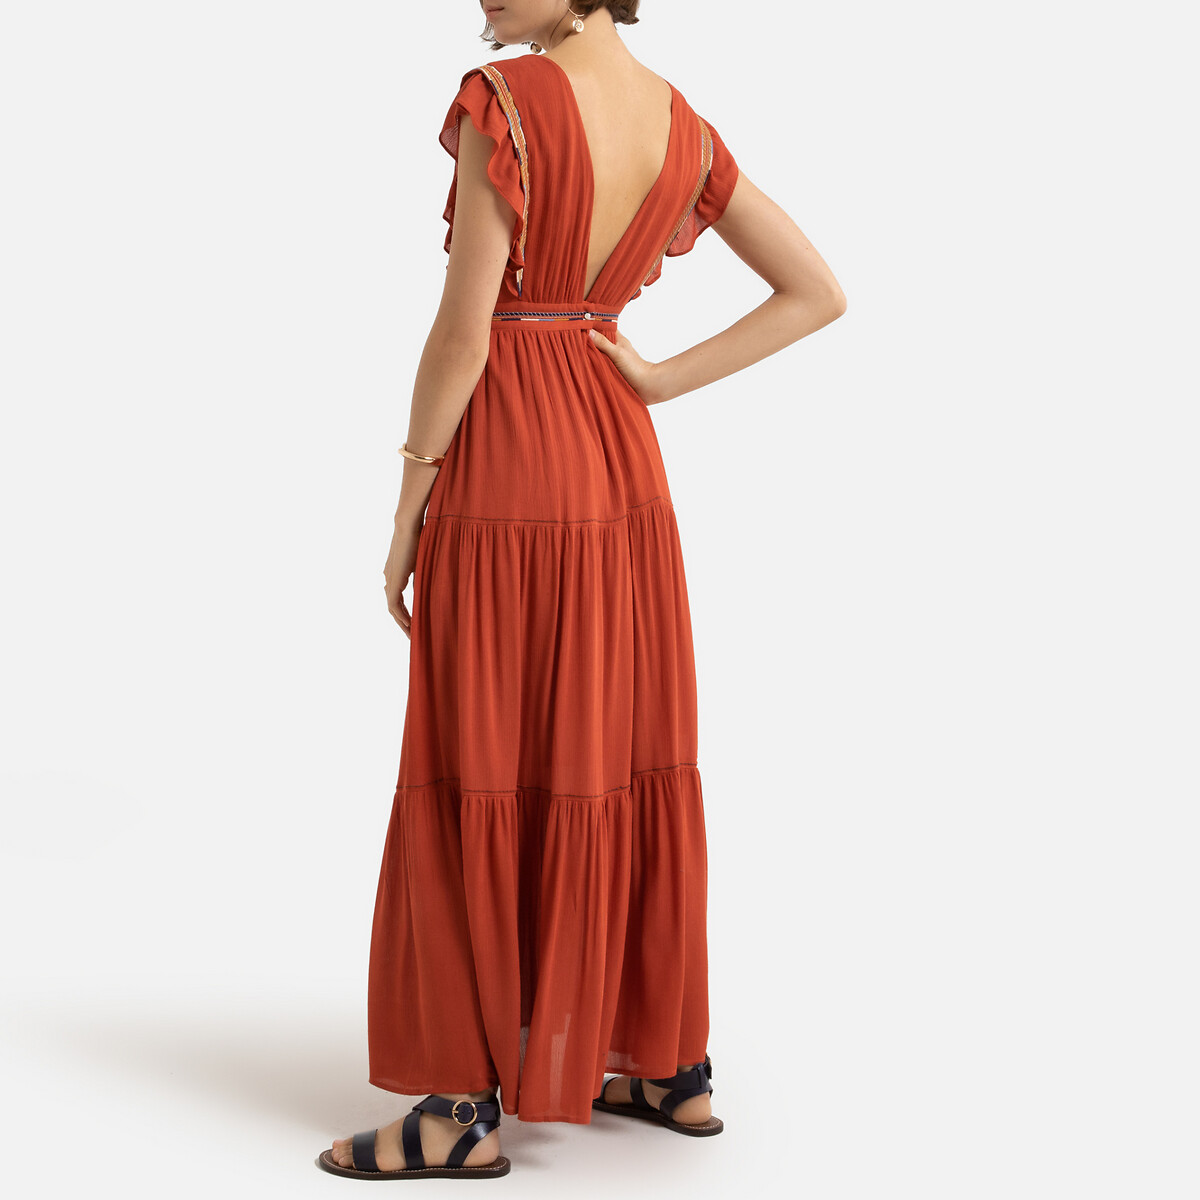 Платье LaRedoute Длинное V-образный вырез короткие рукава 0(XS) оранжевый, размер 0(XS) Длинное V-образный вырез короткие рукава 0(XS) оранжевый - фото 3